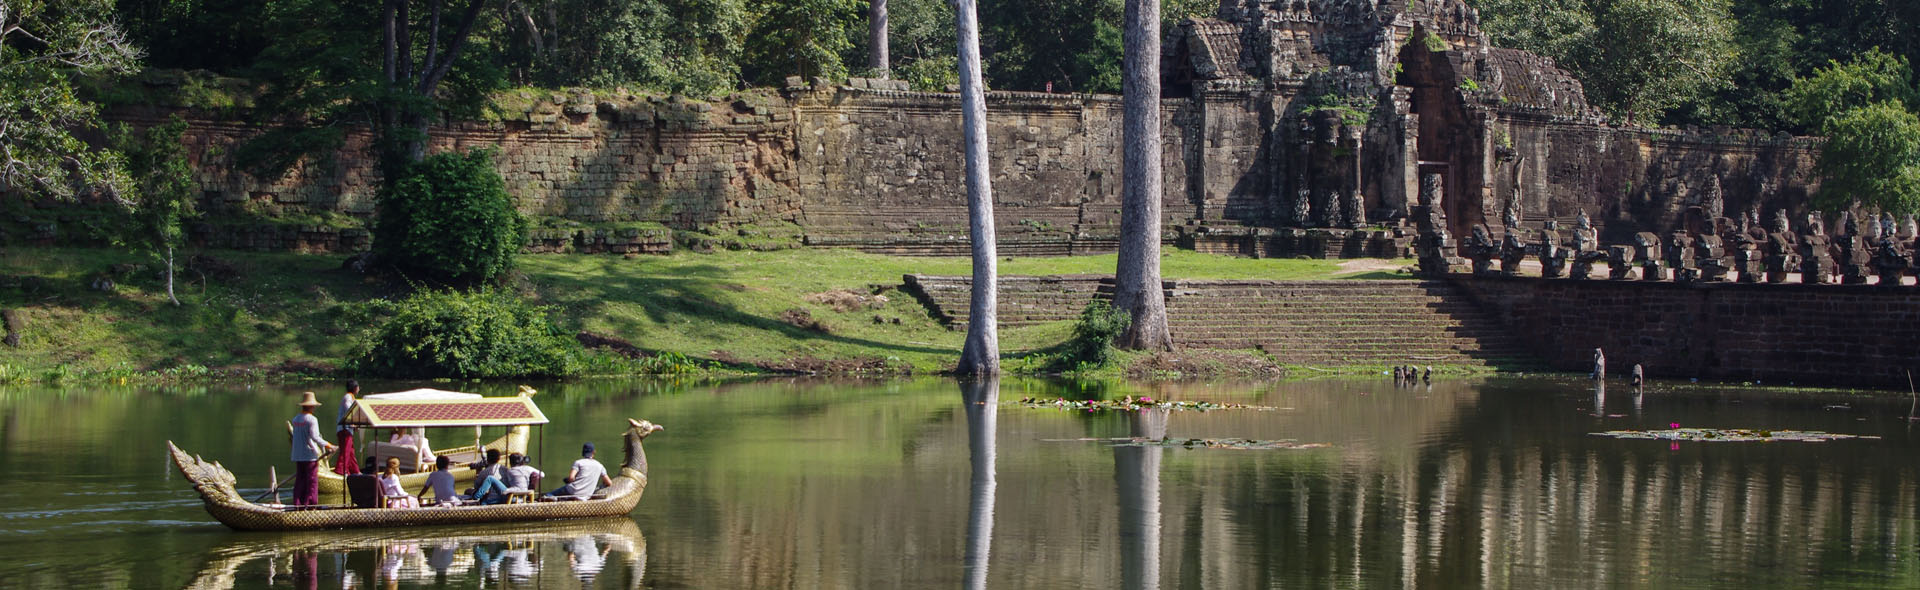 Der König von Angkor